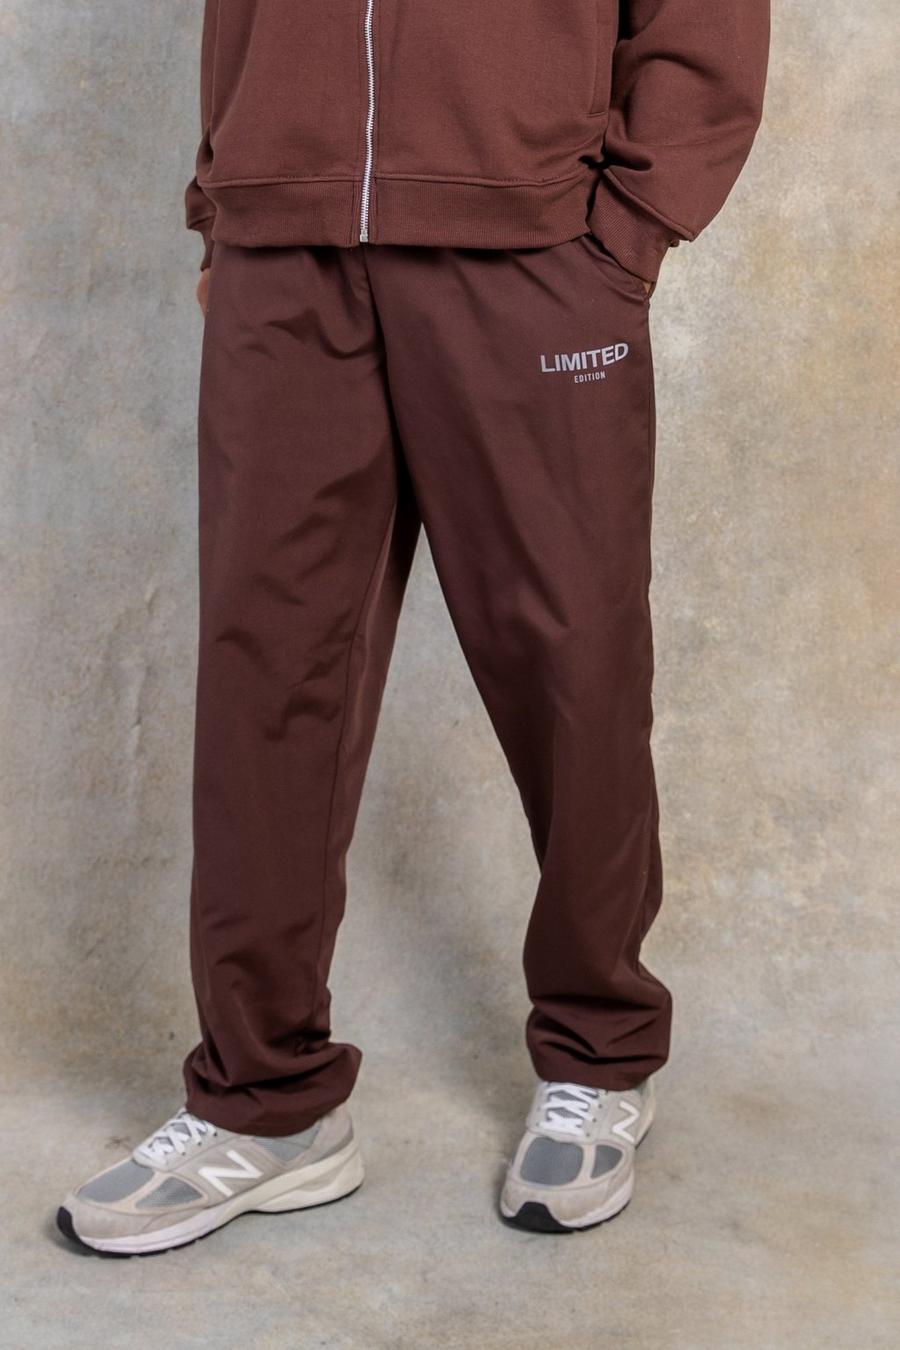 שוקולד marrón מכנסיים בגזרה ישרה מבד עמיד בצבע אפרסק עם כיתוב Limited image number 1